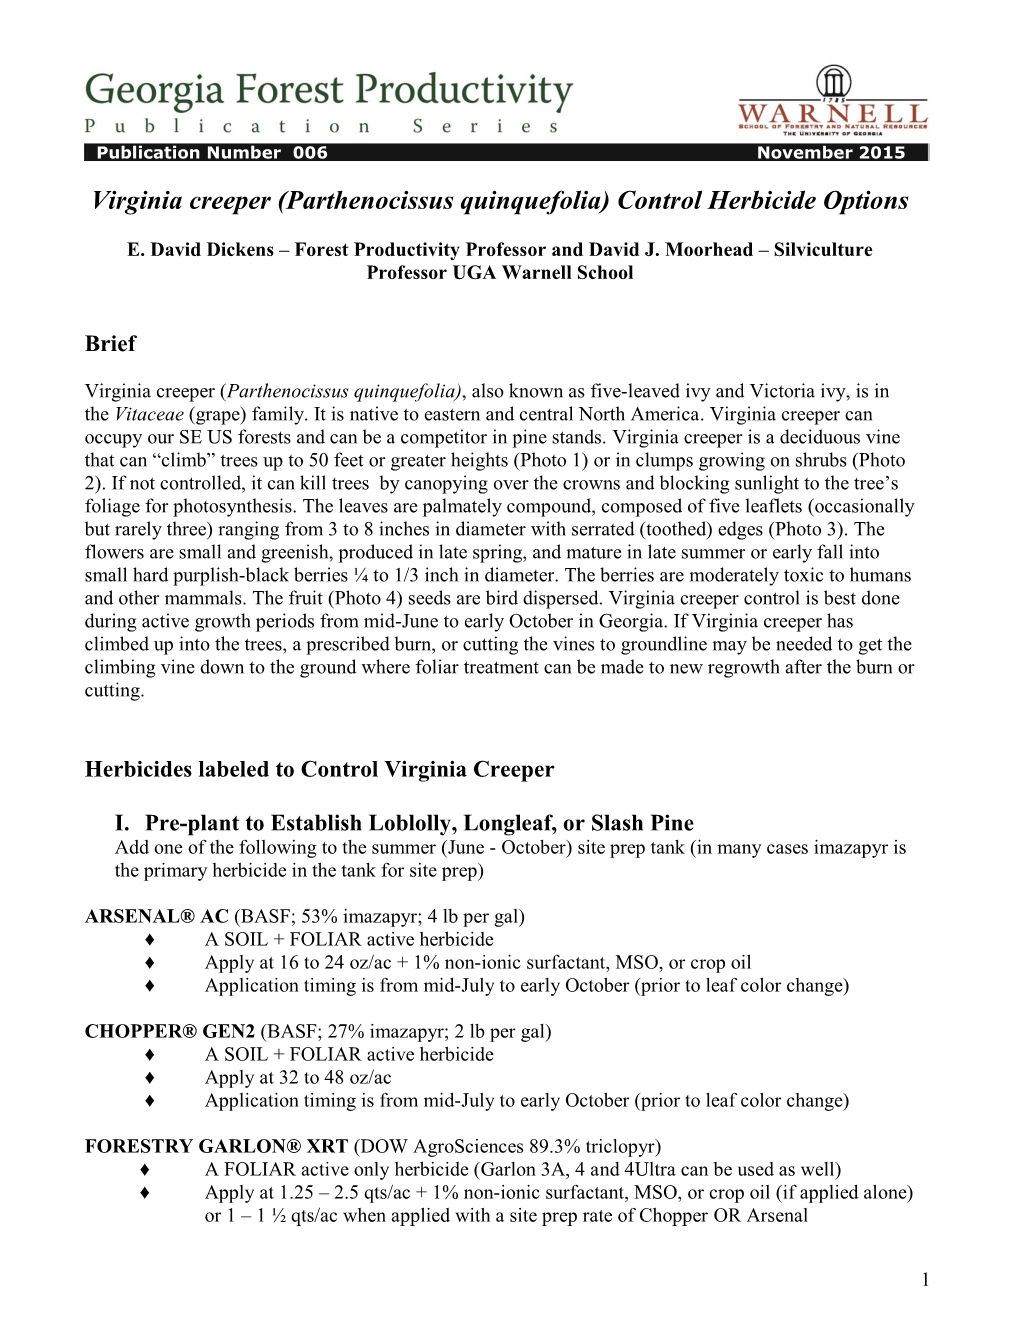 Virginia Creeper (Parthenocissus Quinquefolia) Control Herbicide Options